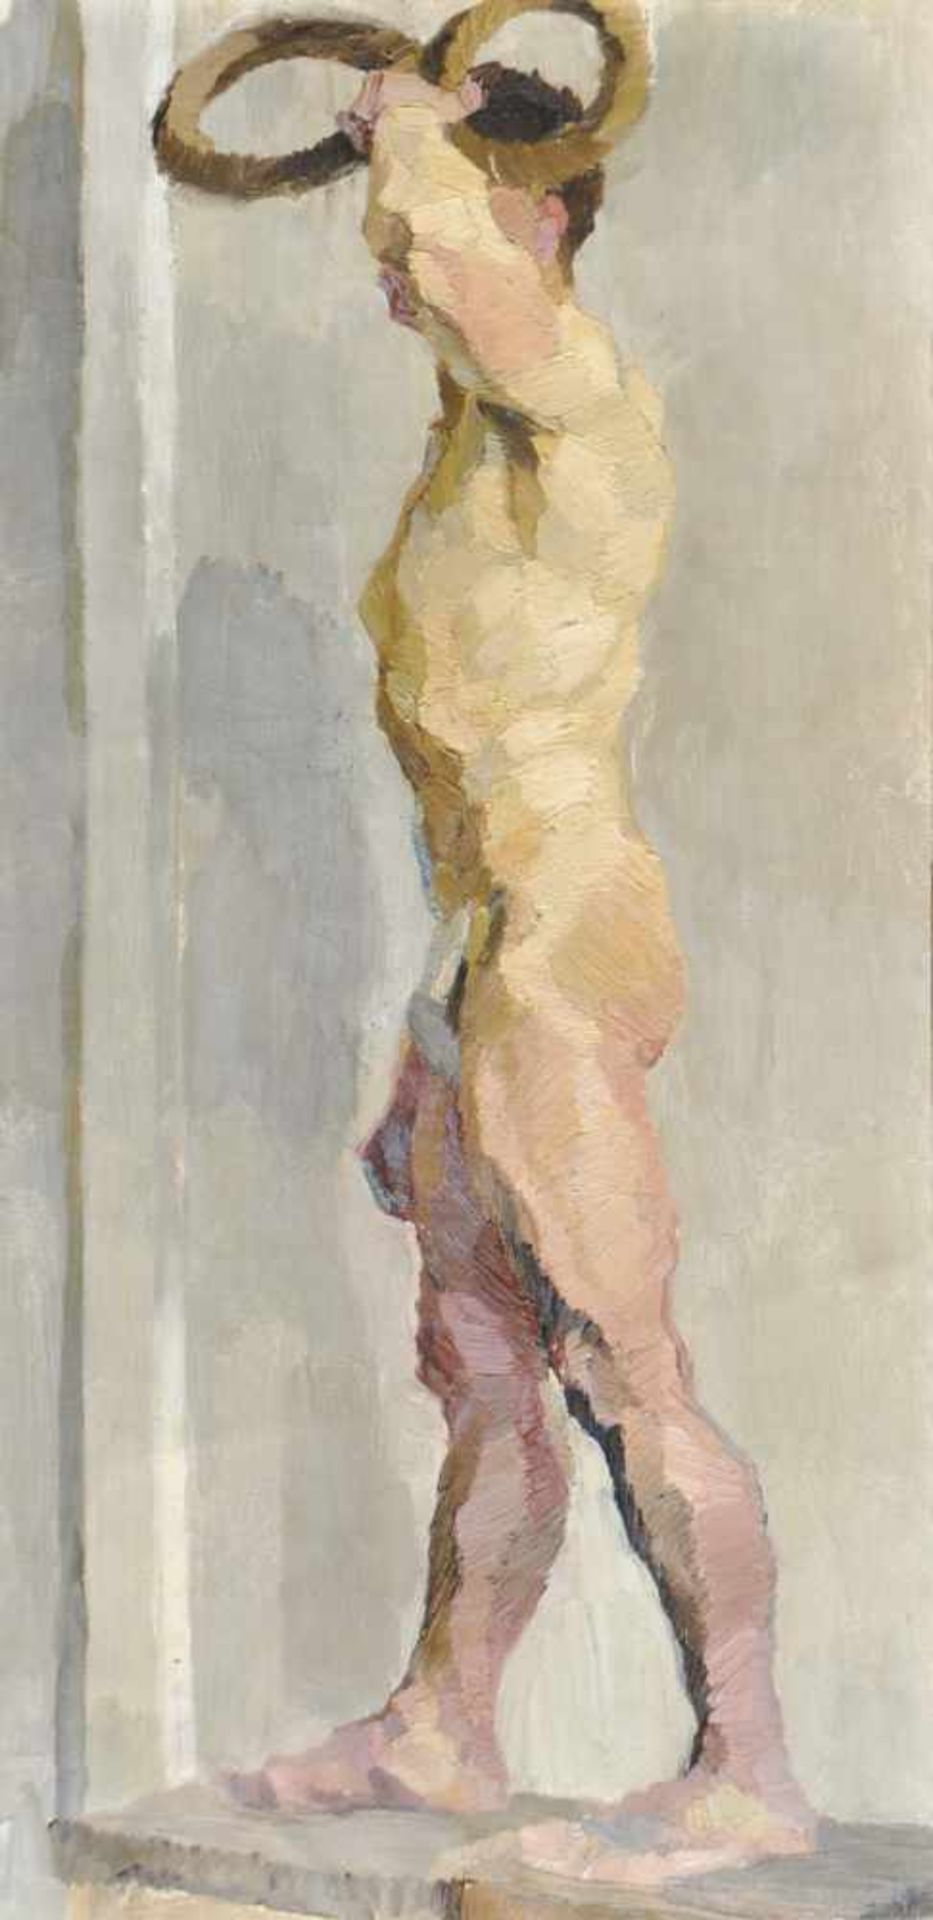 Leo Putz Meran/Merano 1869  1940)Männlicher Akt;Öl auf Leinwand auf Karton, 54 x 26 cm, gerahmt